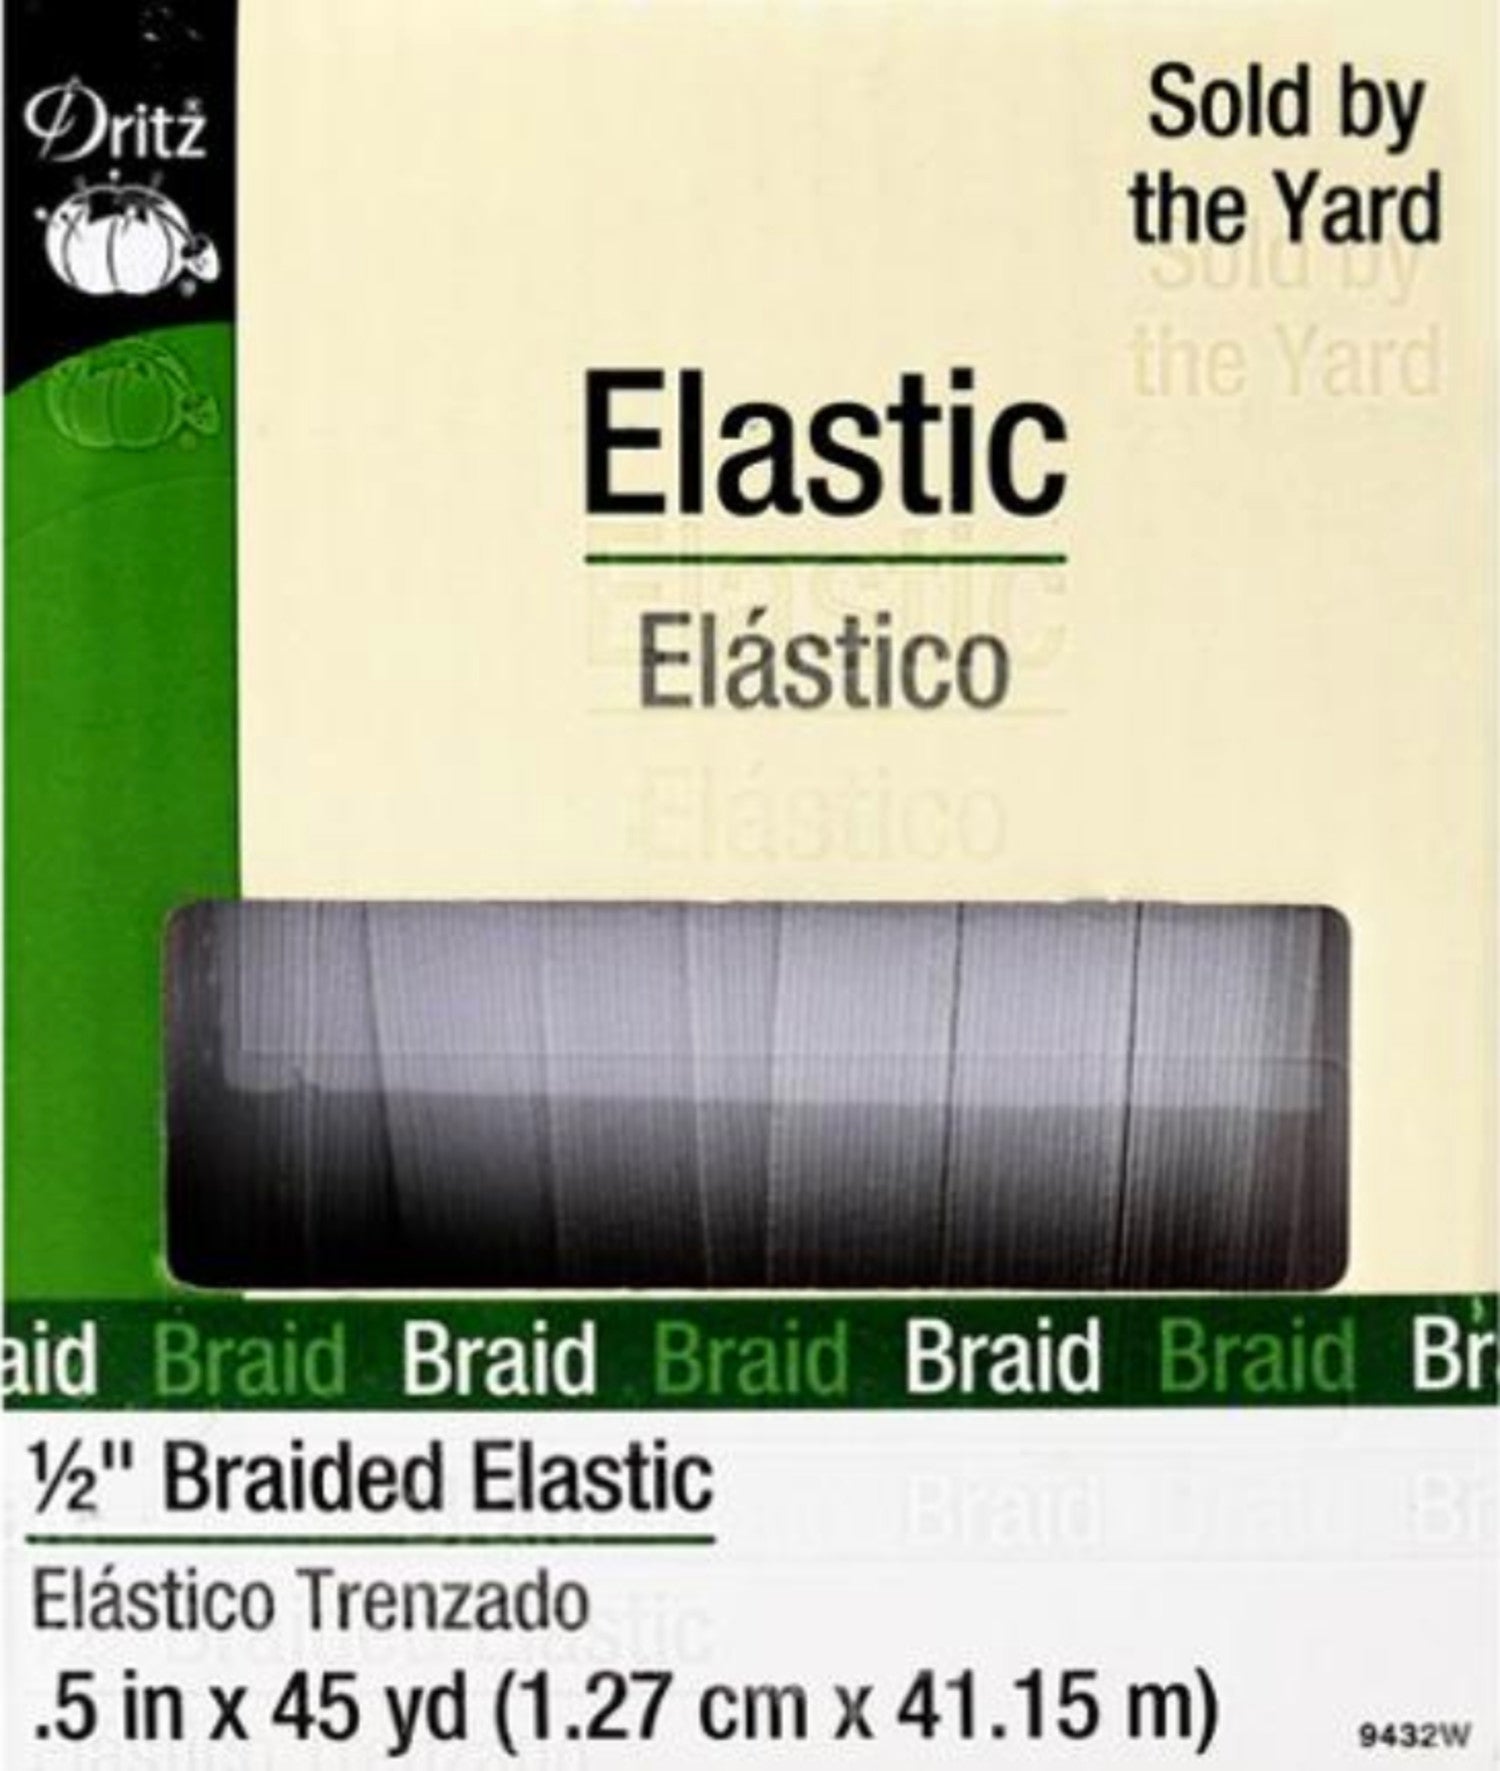 Dritz 1/4 Braided Elastic, 8 yd. 